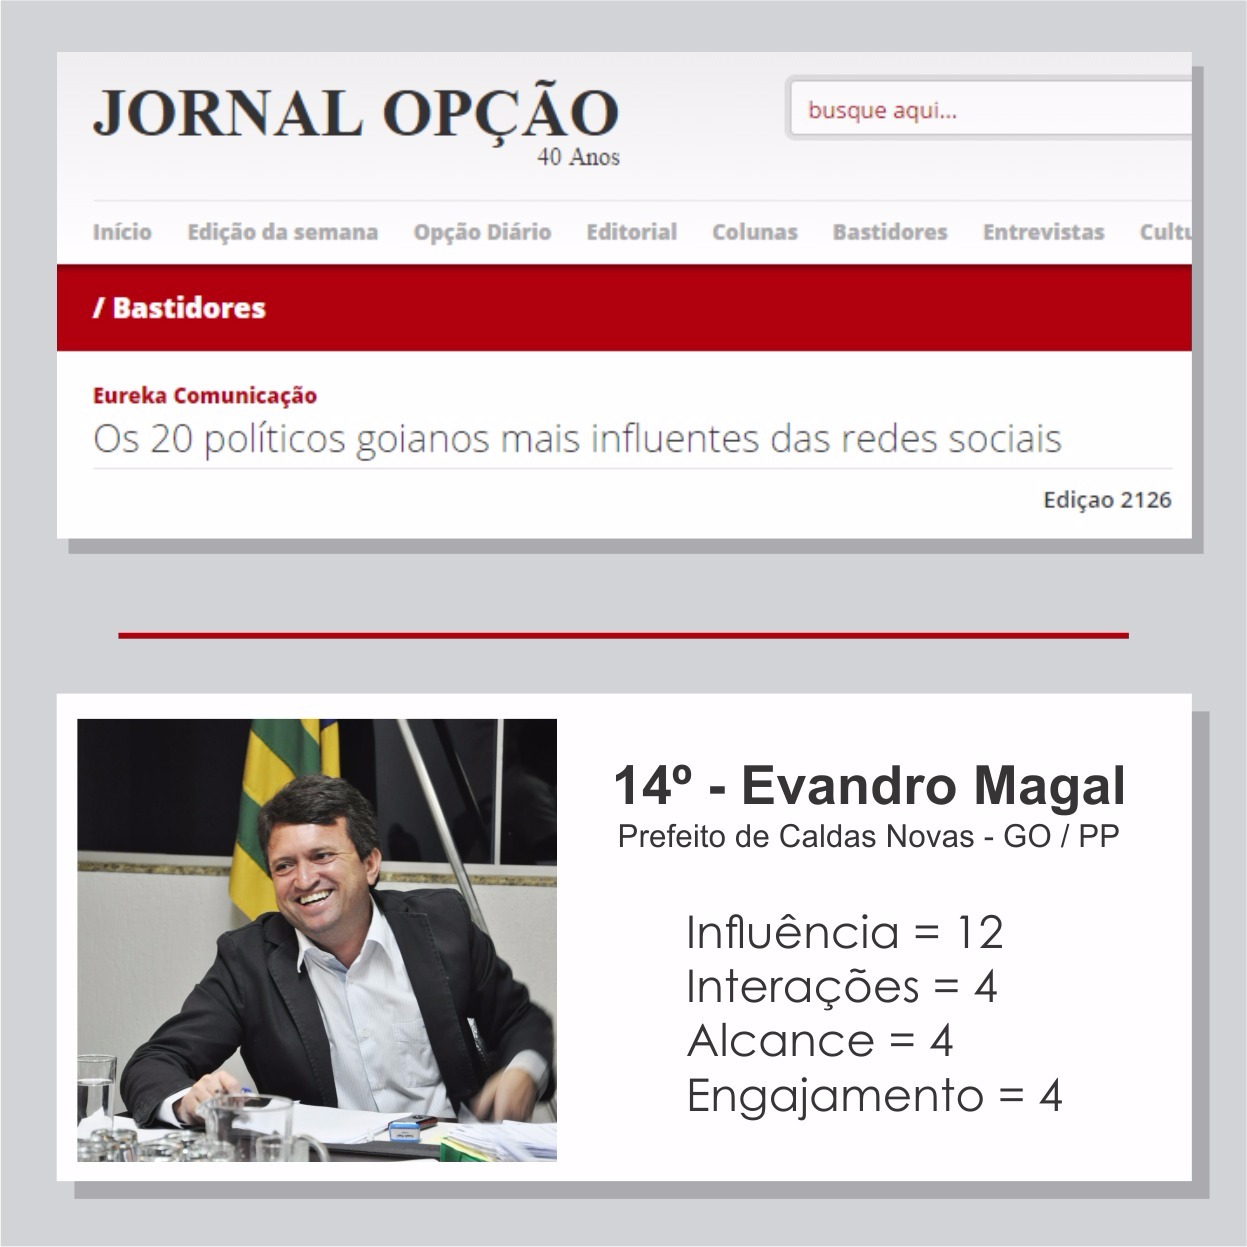 Evandro Magal é o 14º político mais influente das redes sociais - 2